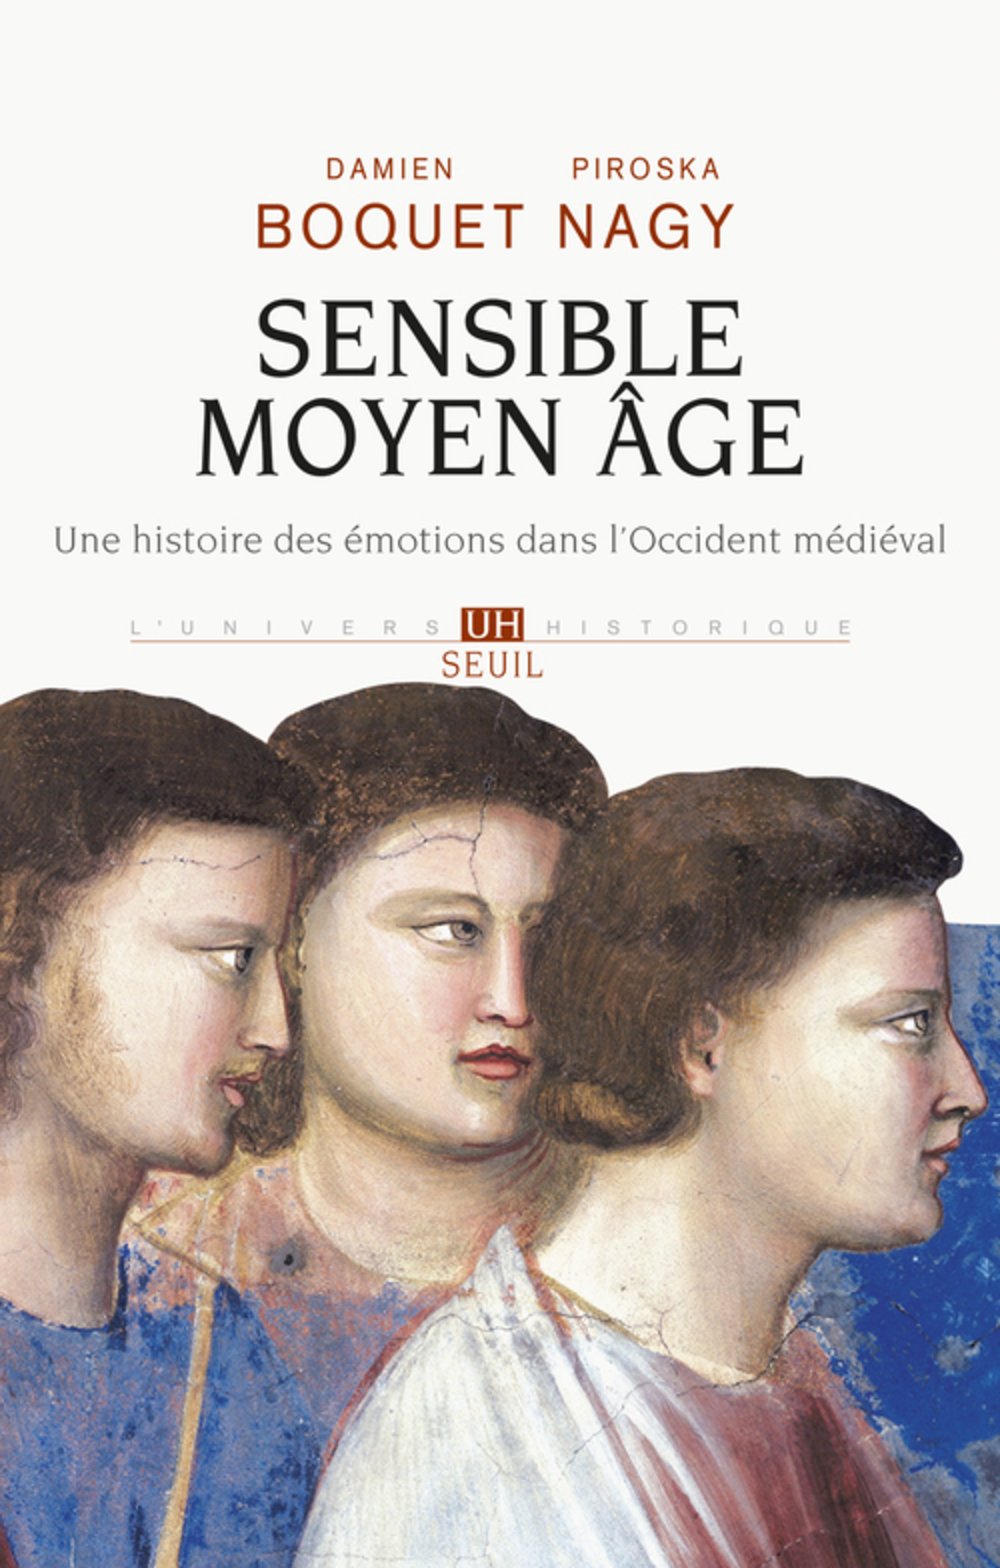 Sensible Moyen Age. Une histoire des émotions dans l'Occident médiéval, 2015, 480 p.